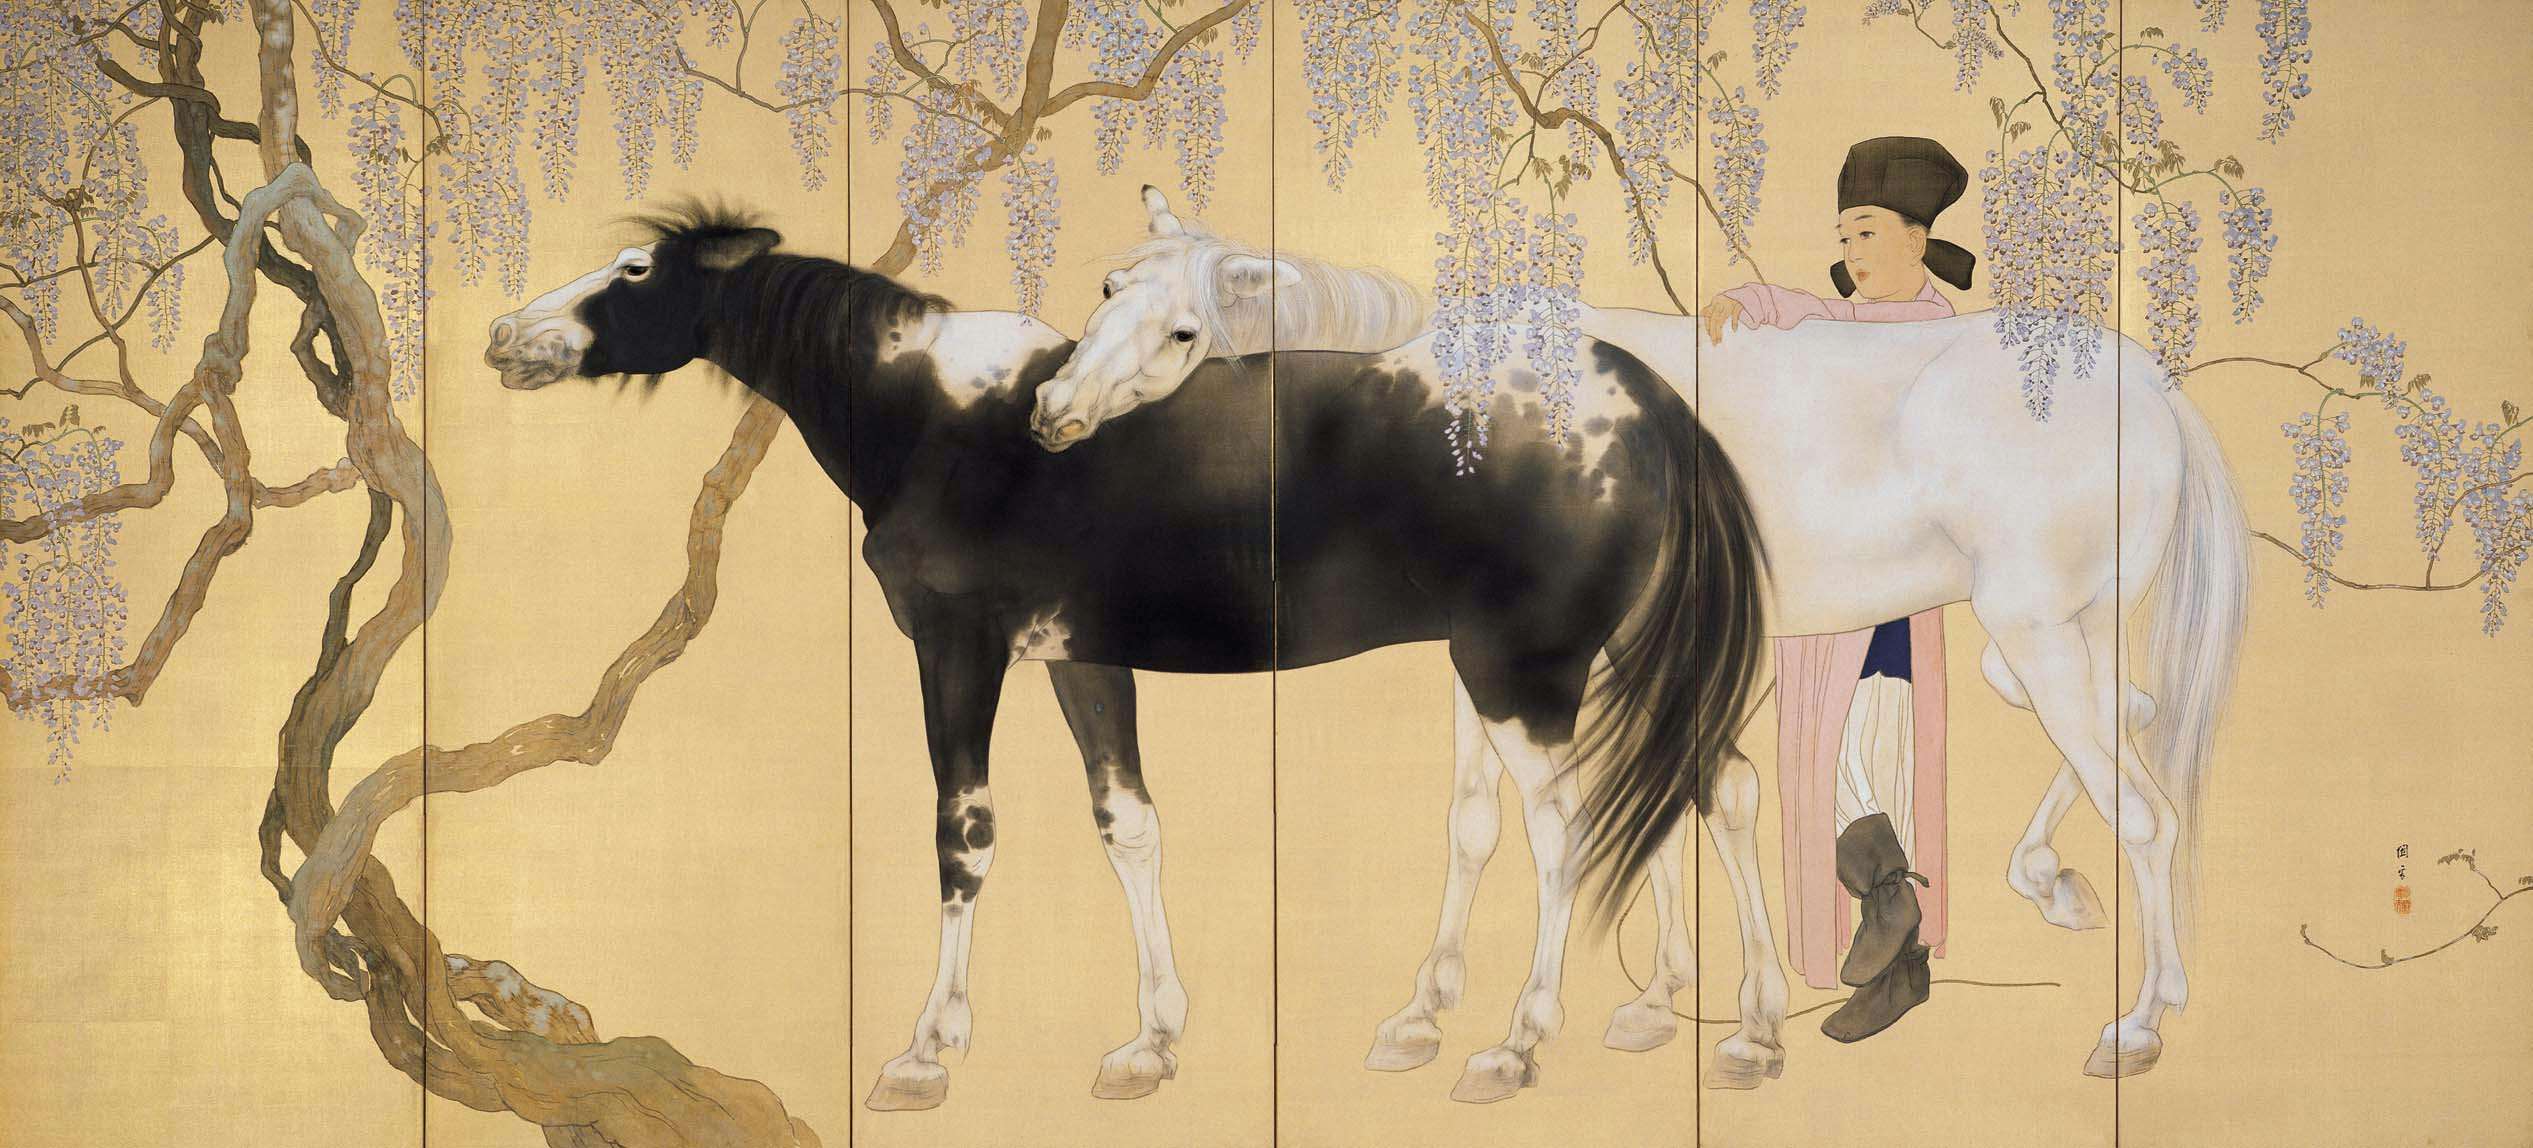 和魂漢才の日本画家、橋本関雪。 生誕135年を記念して島根・足立美術館